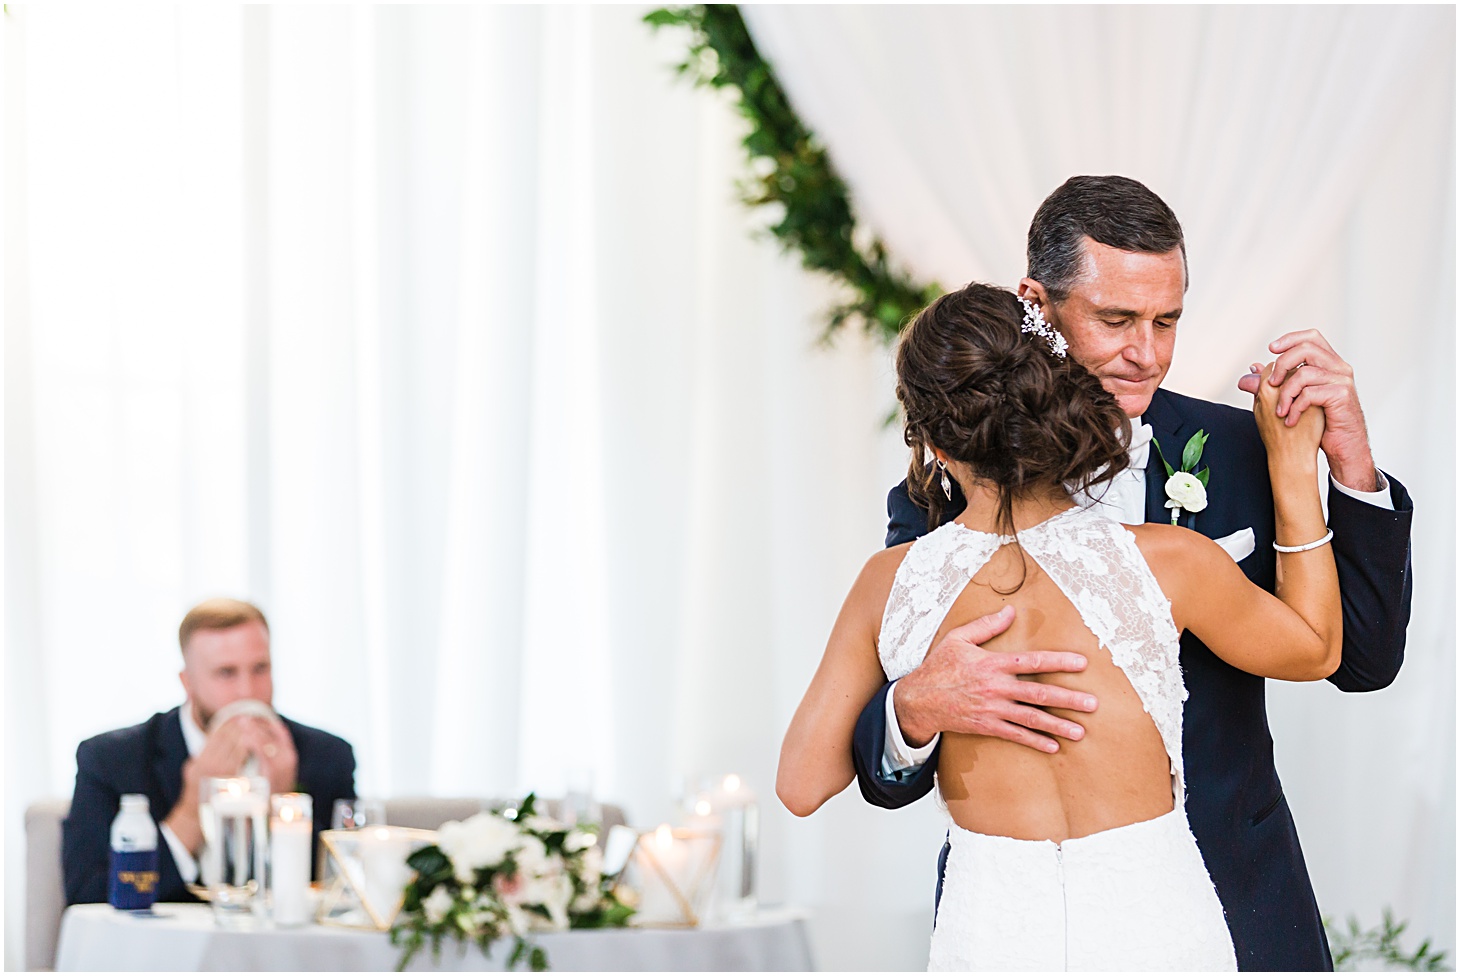 Father Daughter Dance | Top Washington DC wedding photographer Sarah Bradshaw